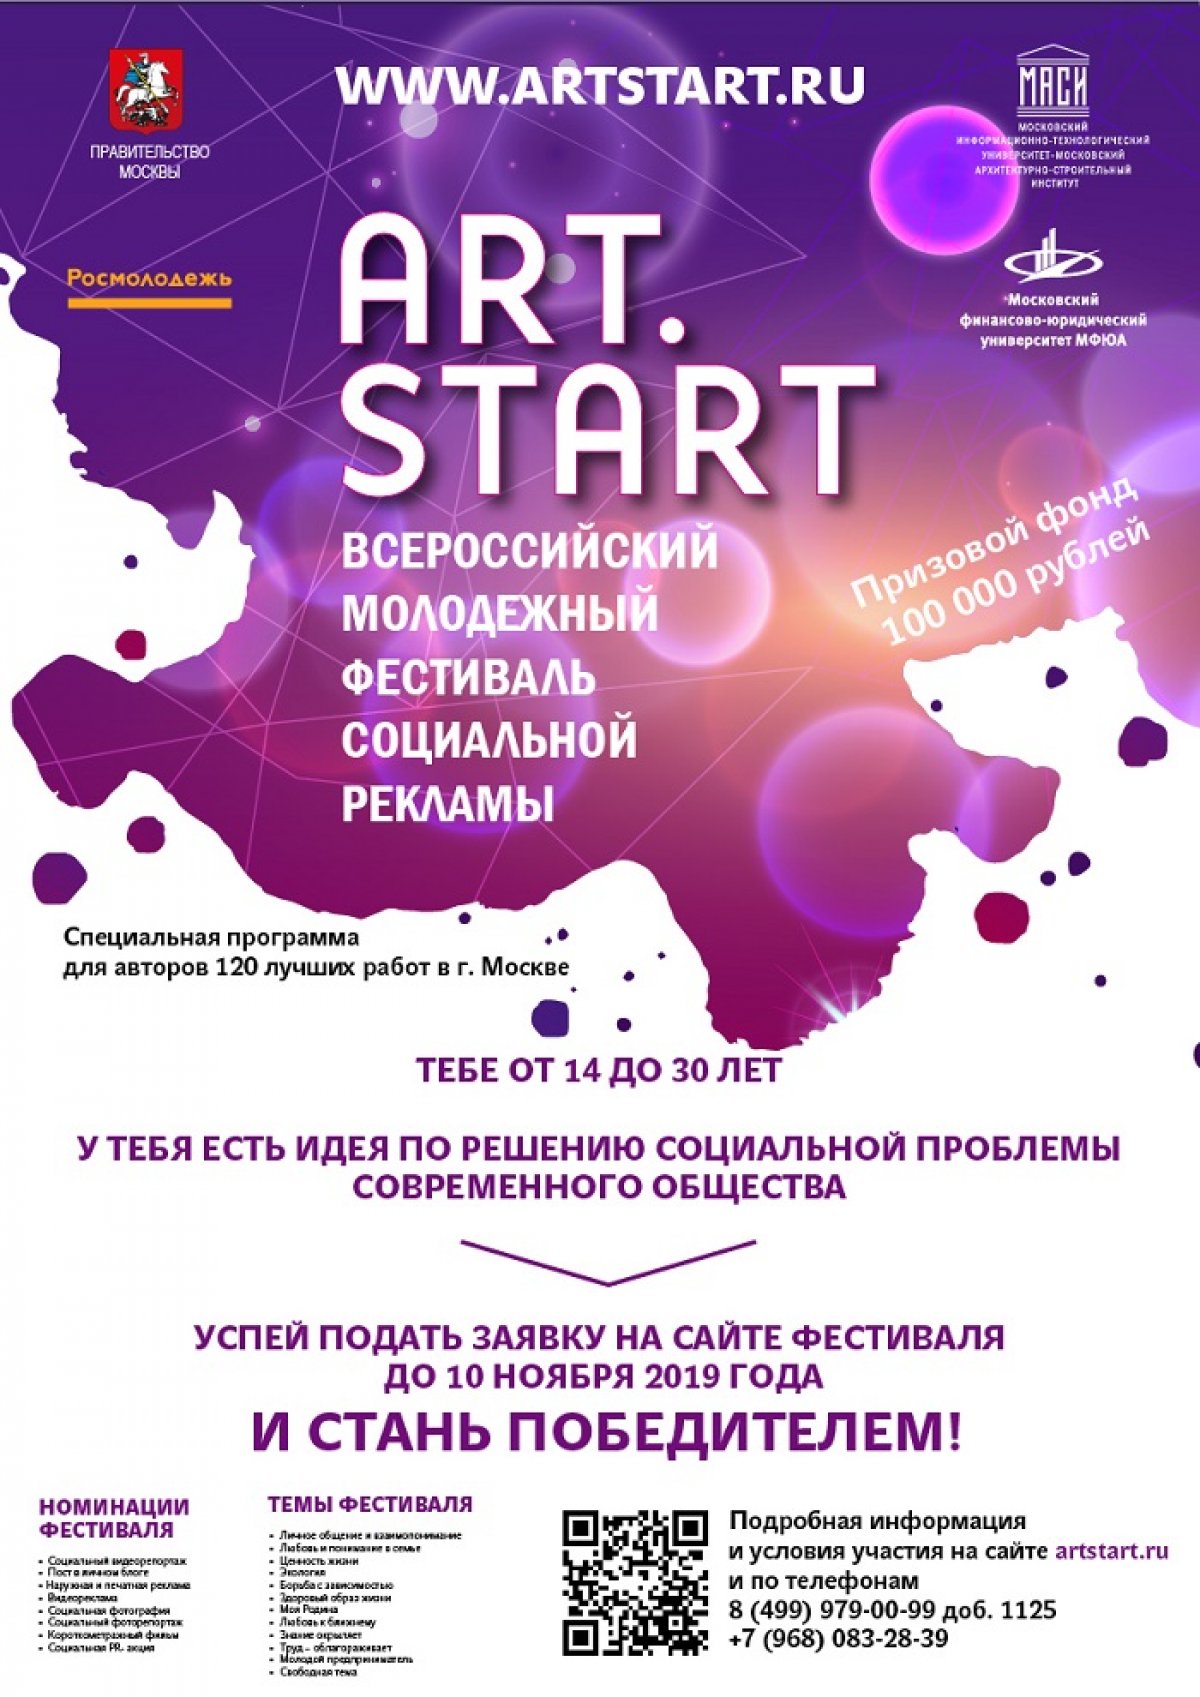 Приглашаем к участию во Всероссийском молодежном Фестивале социальной рекламы ART.START молодых людей со всей России в возрасте от 14 до 30 лет!